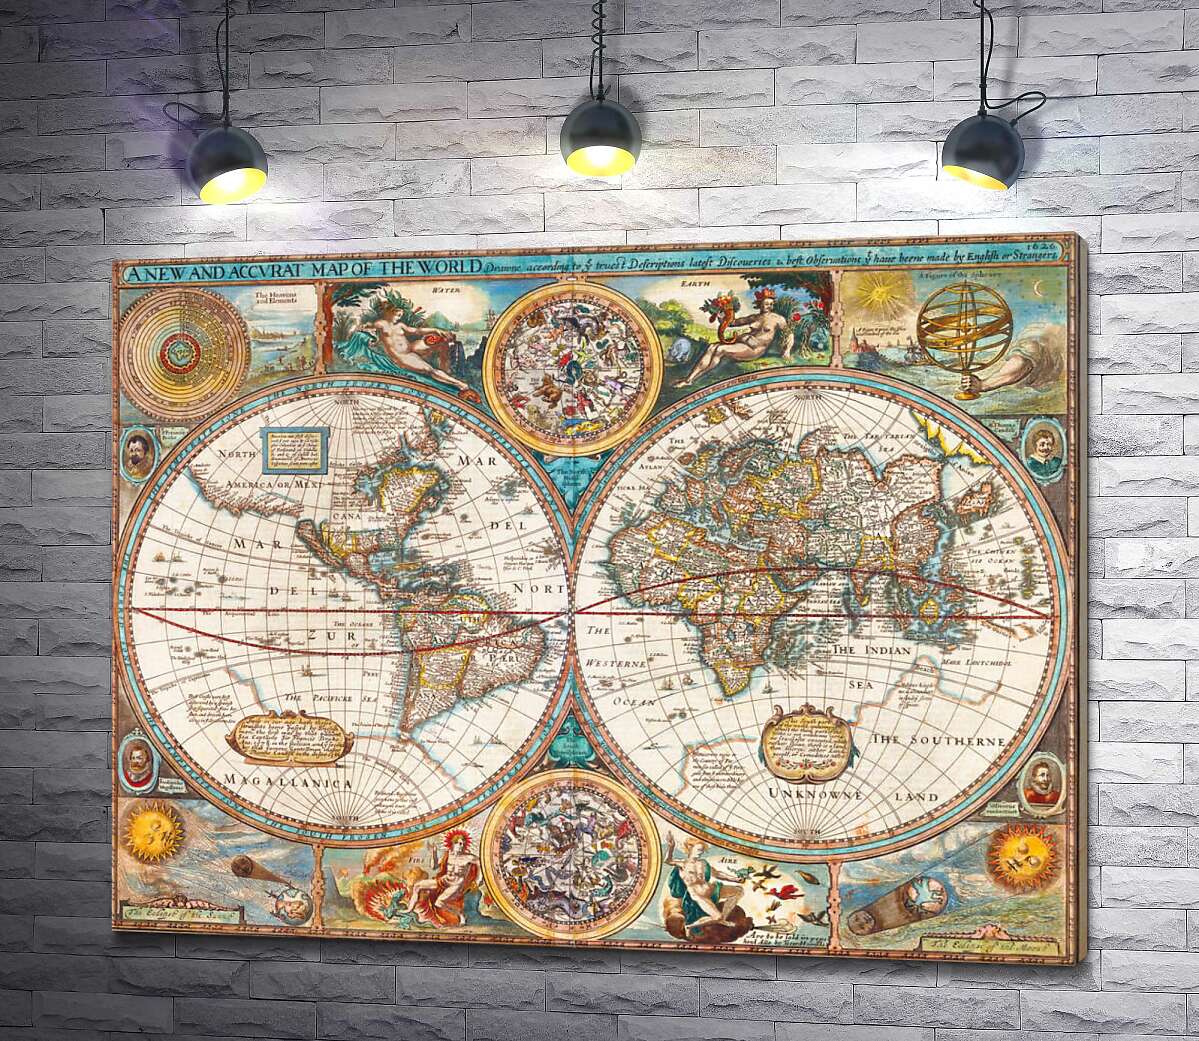 картина Географічна карта "Нового світу" 1627 року, авторства картографа Джона Спіда (John Speed)